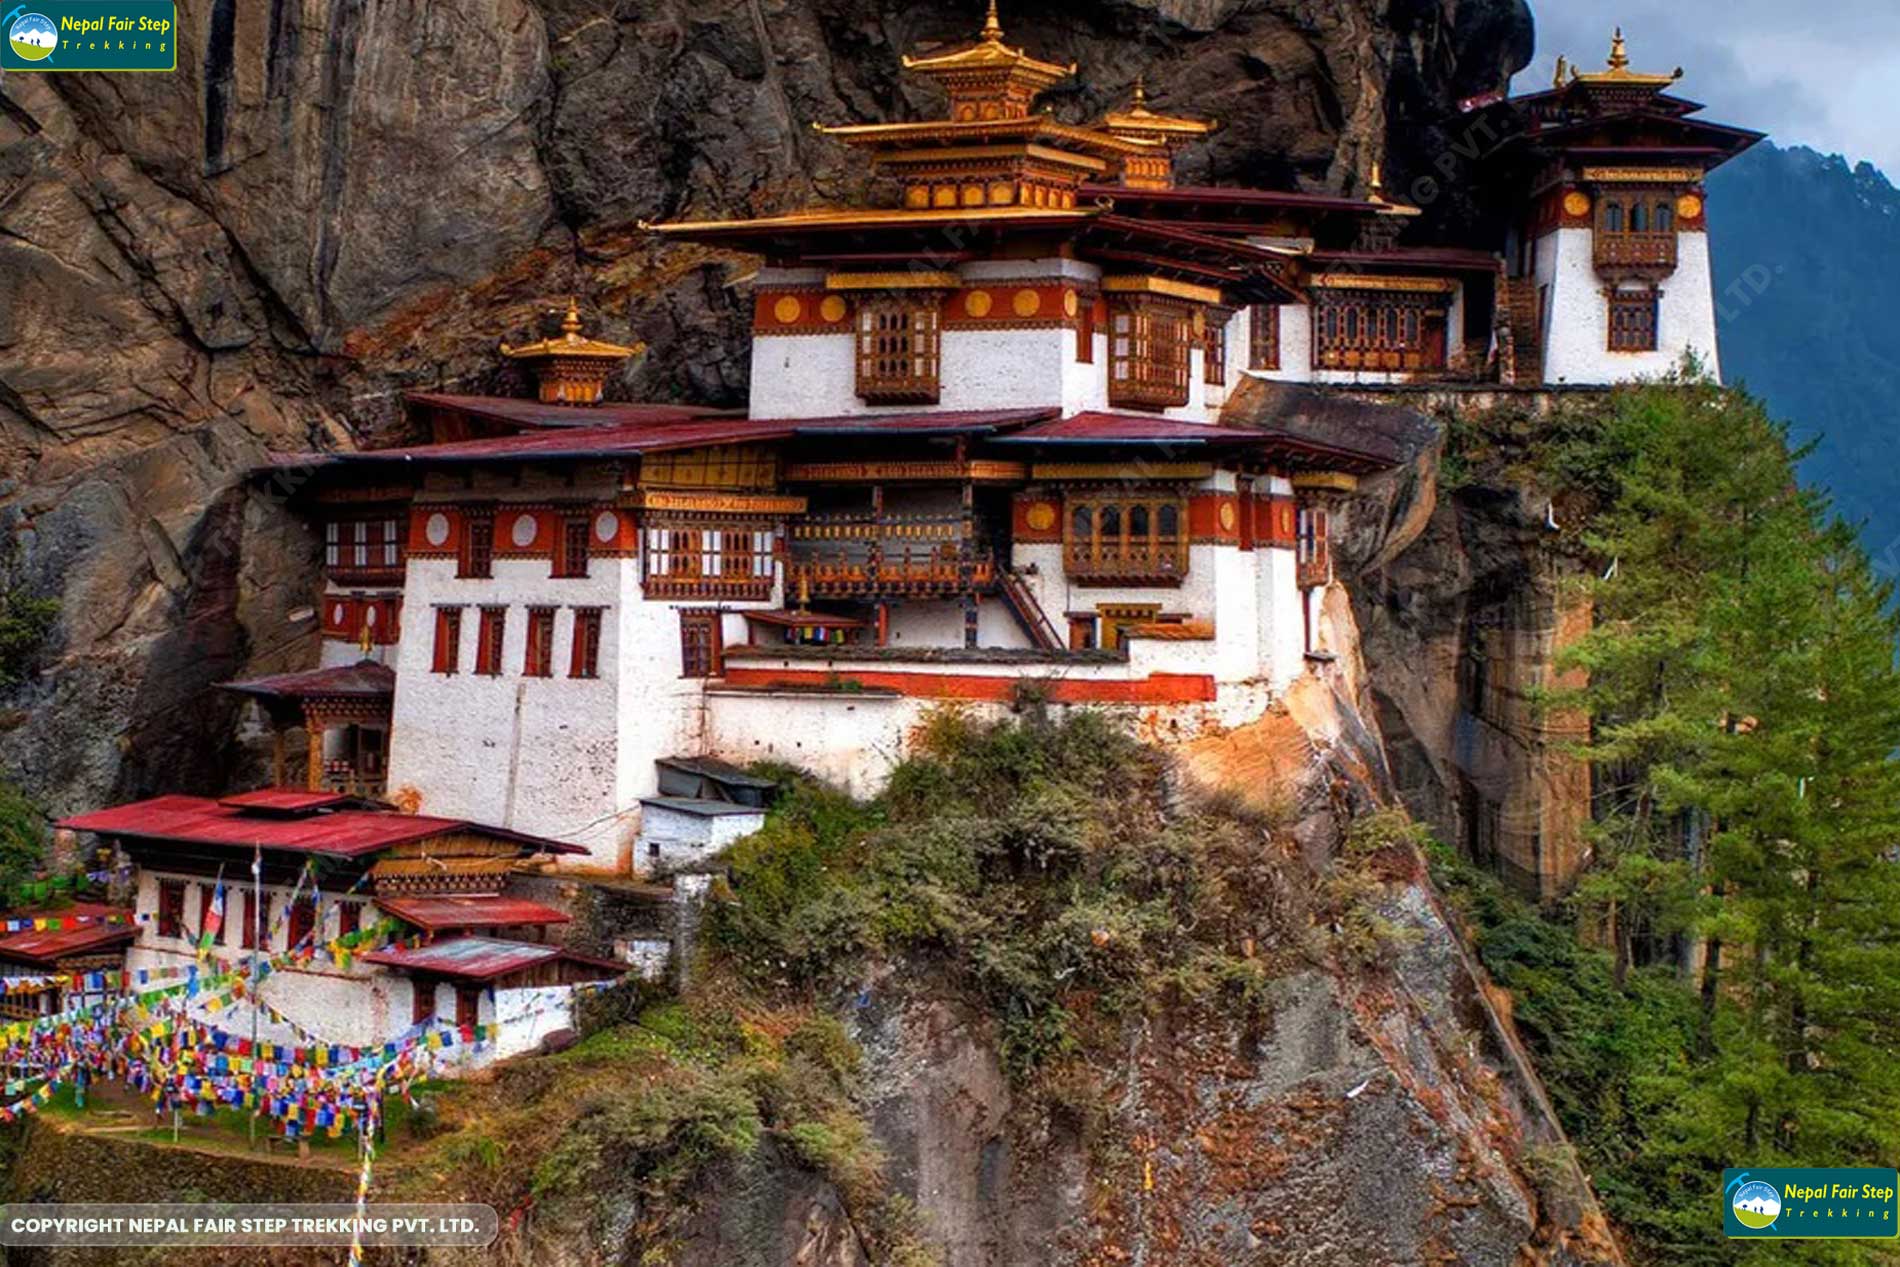 Nepal fair step trekking _Bhutan